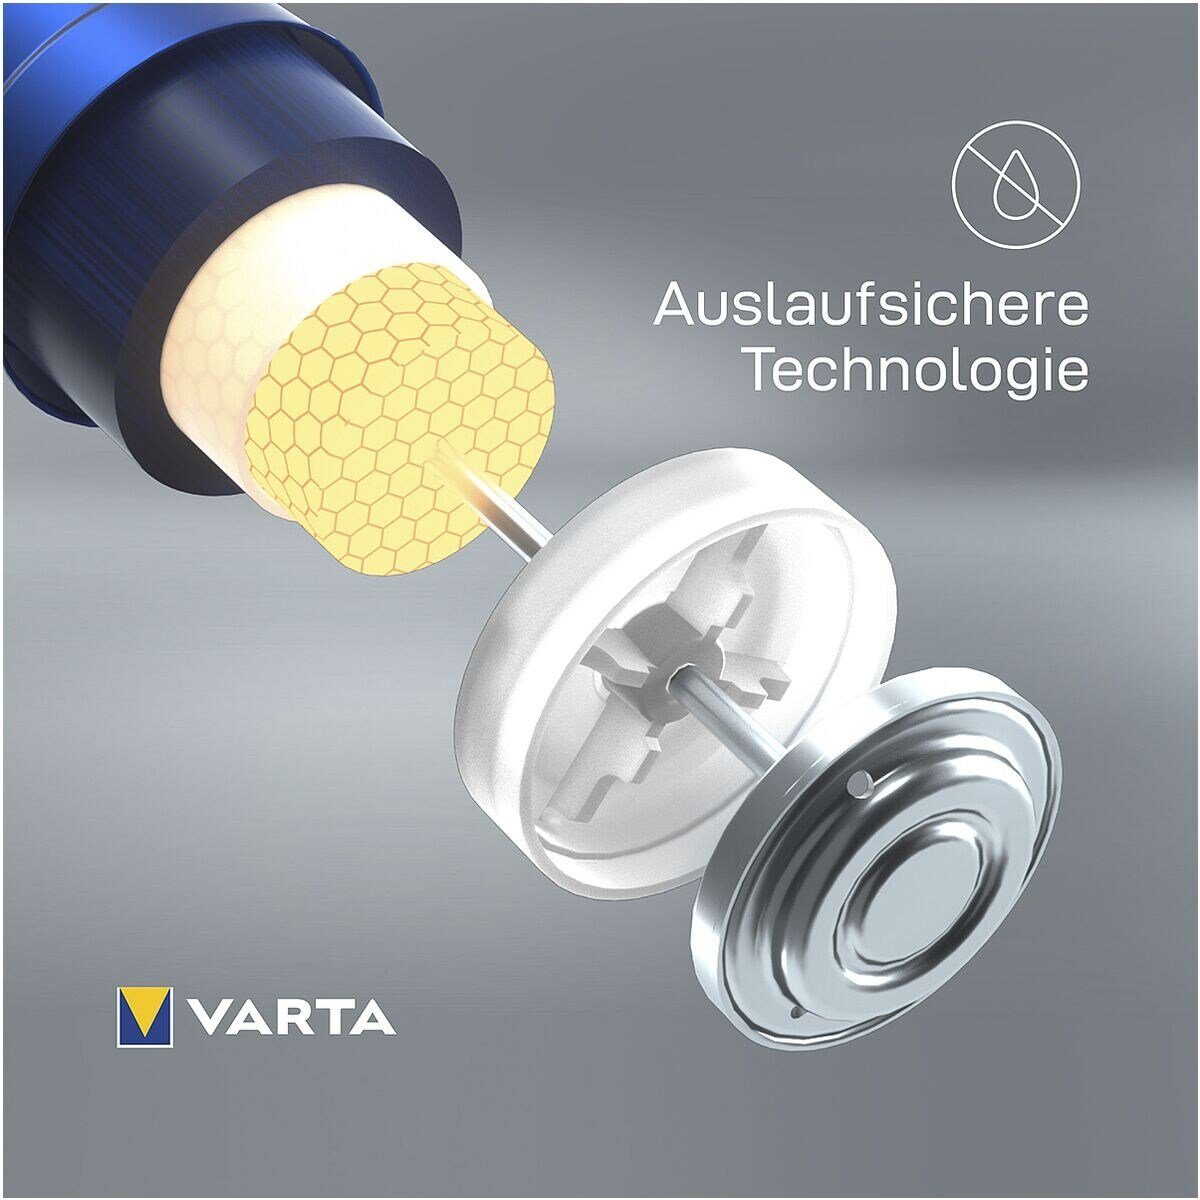 VARTA LONGLIFE Power Batterie, LR03, / V, Lebensdauer / Alkali-Mangan, St), 1,5 AAA (1.5 langer Micro V, mit 12